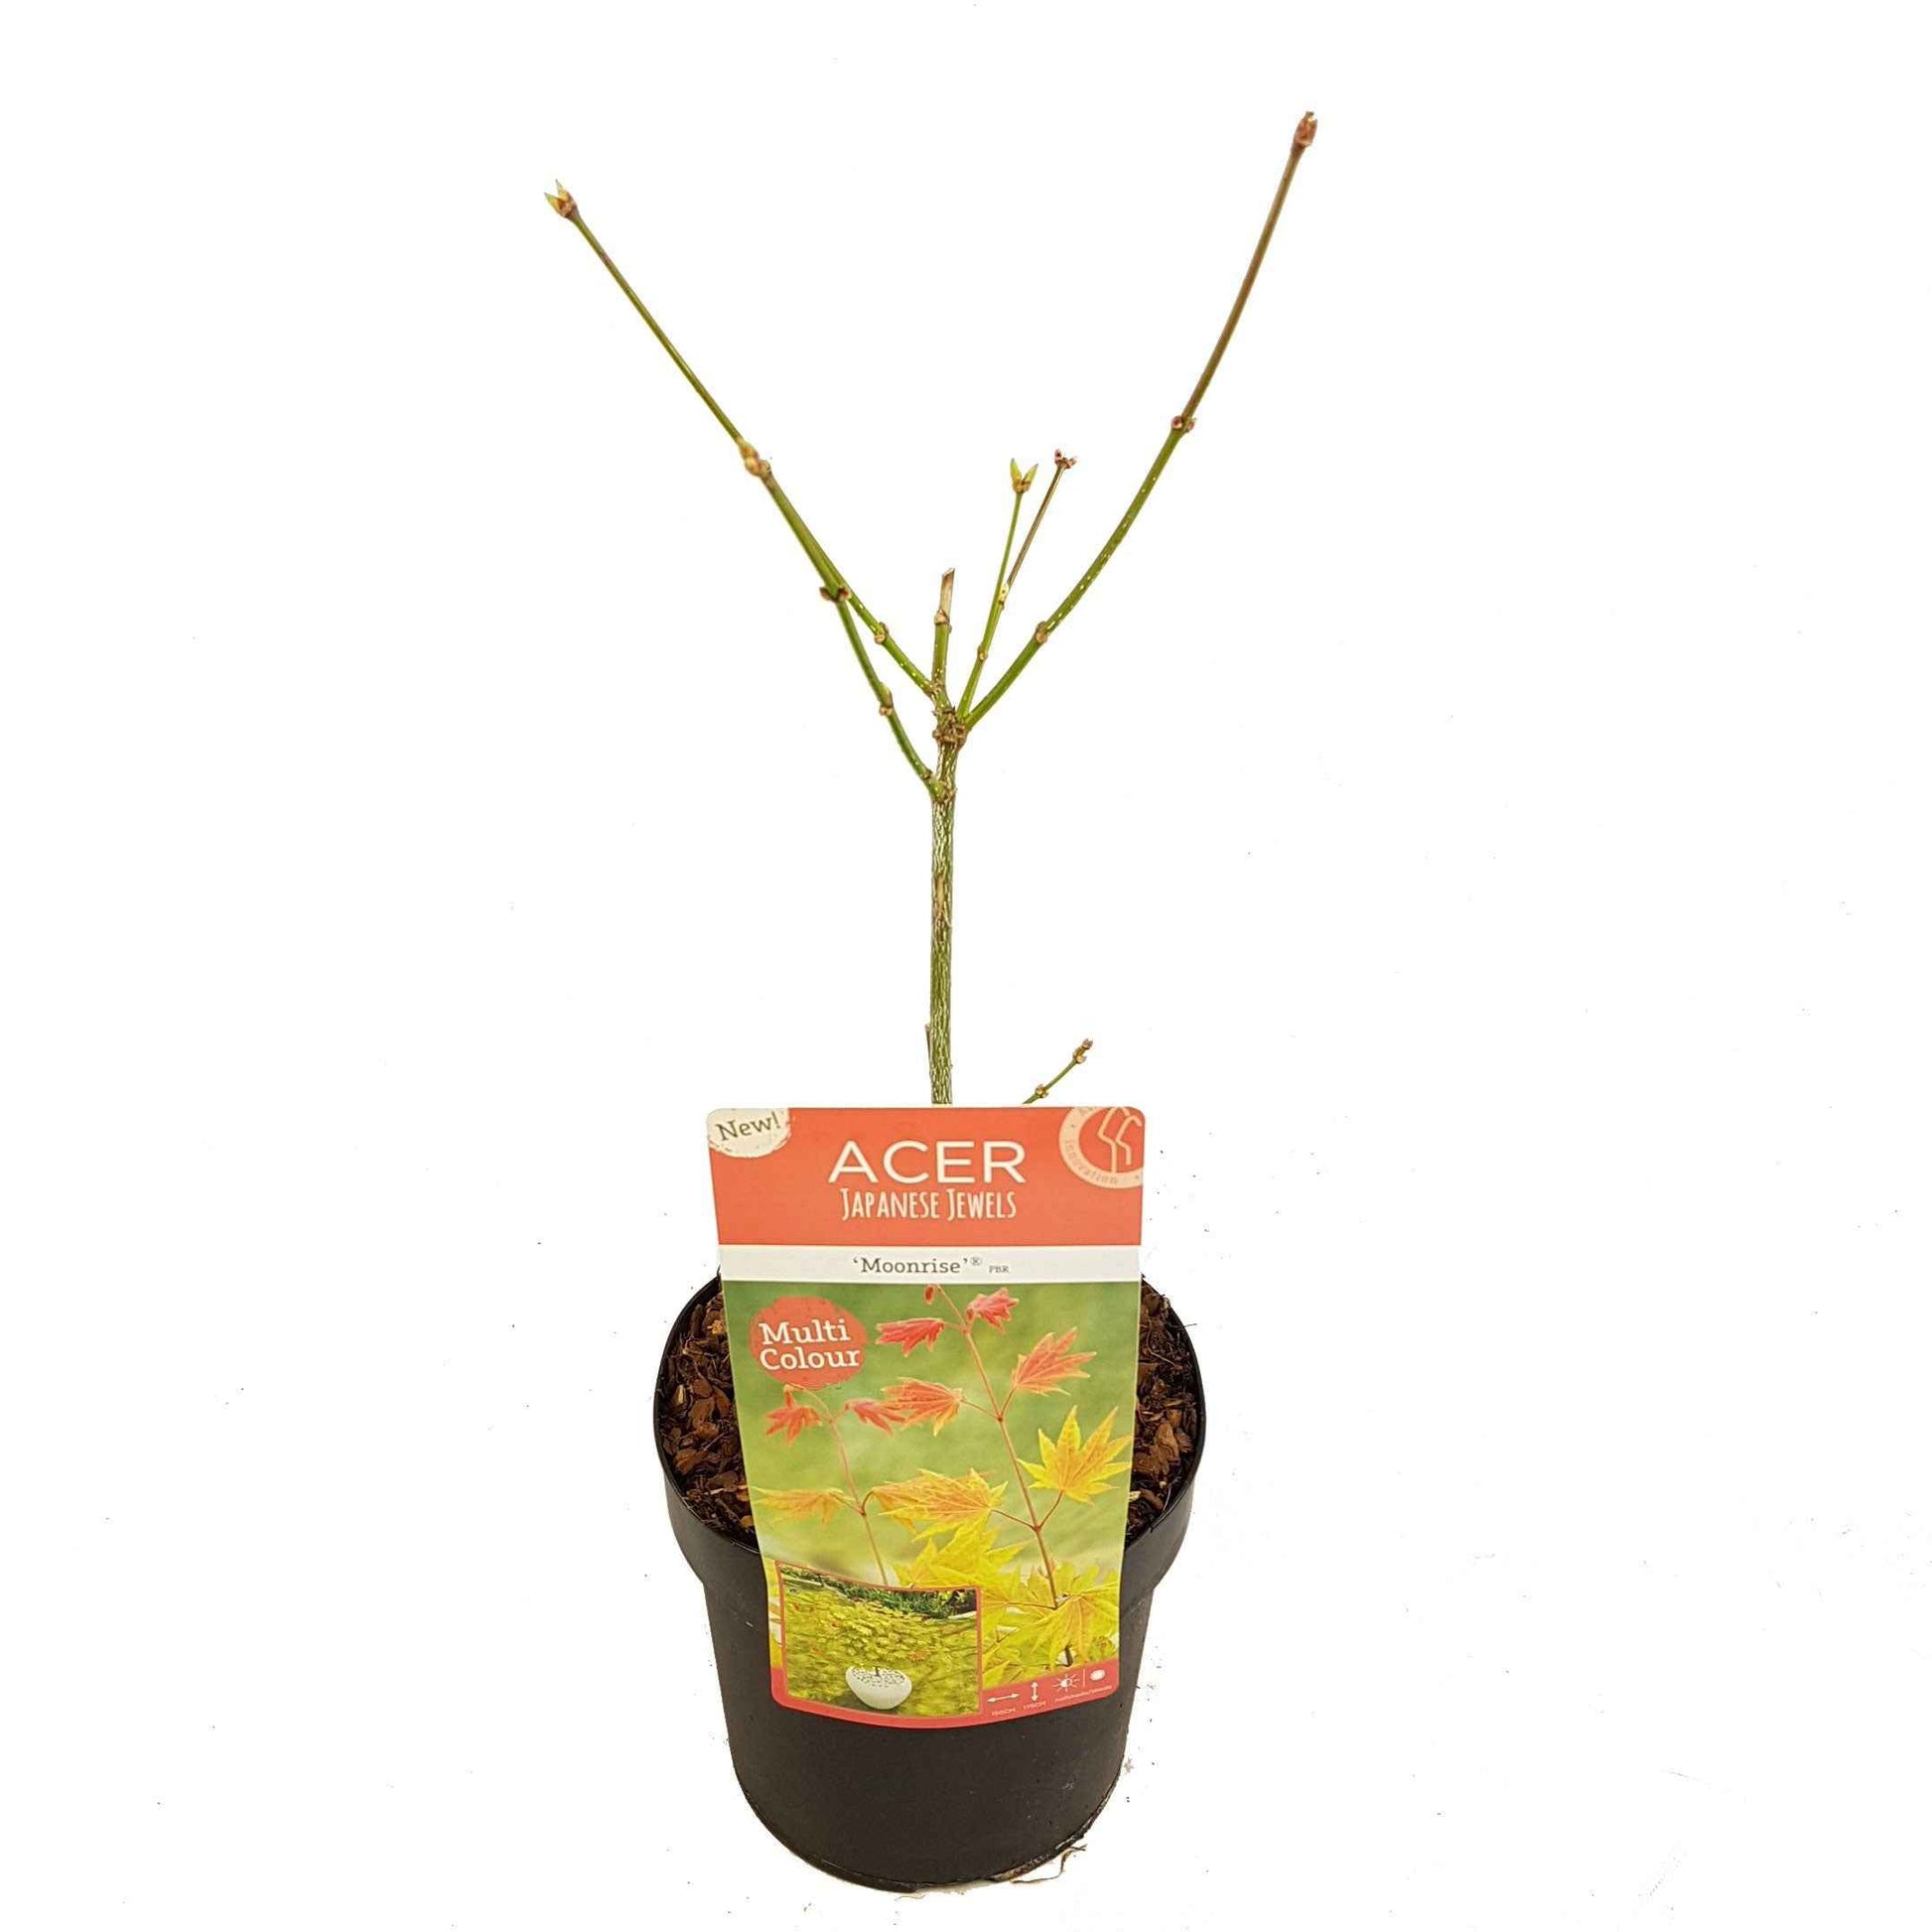 Japanse esdoorn Acer Moonrise geel-rood-oranje - Winterhard - Plant eigenschap